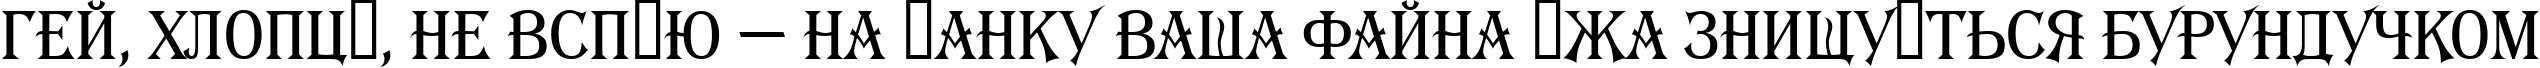 Пример написания шрифтом a_AlgeriusNr текста на украинском